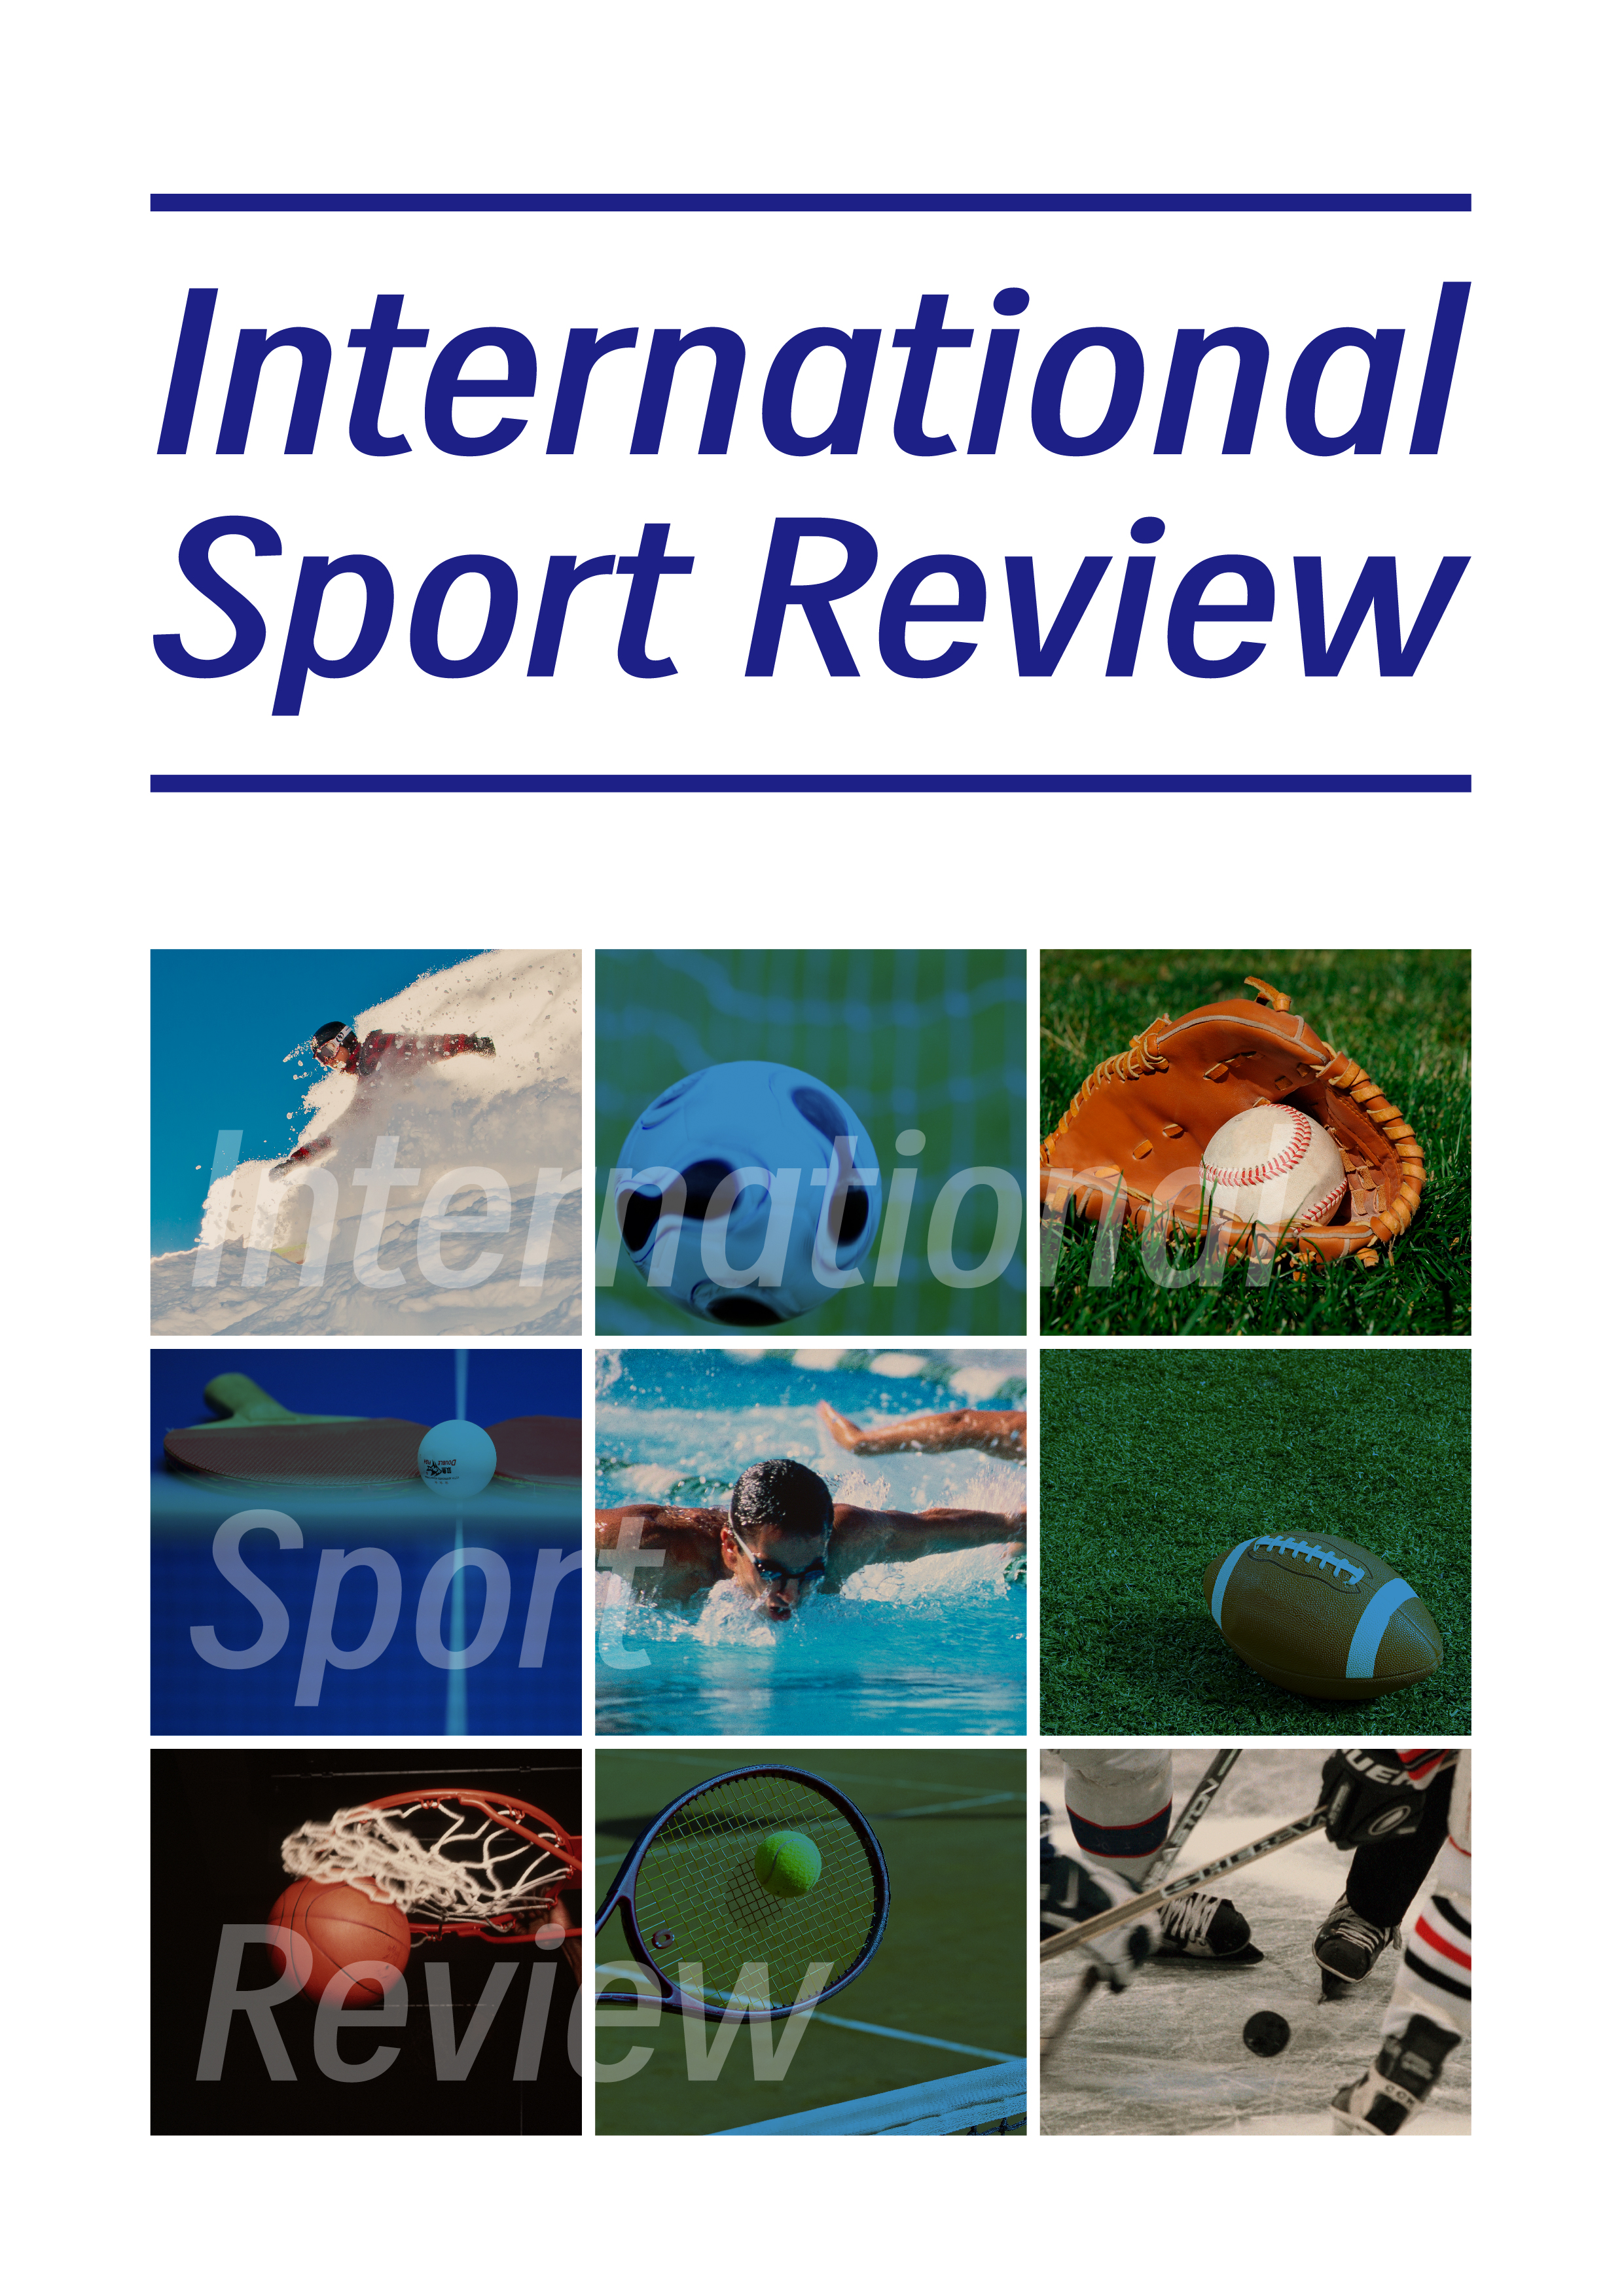 International Sport Review